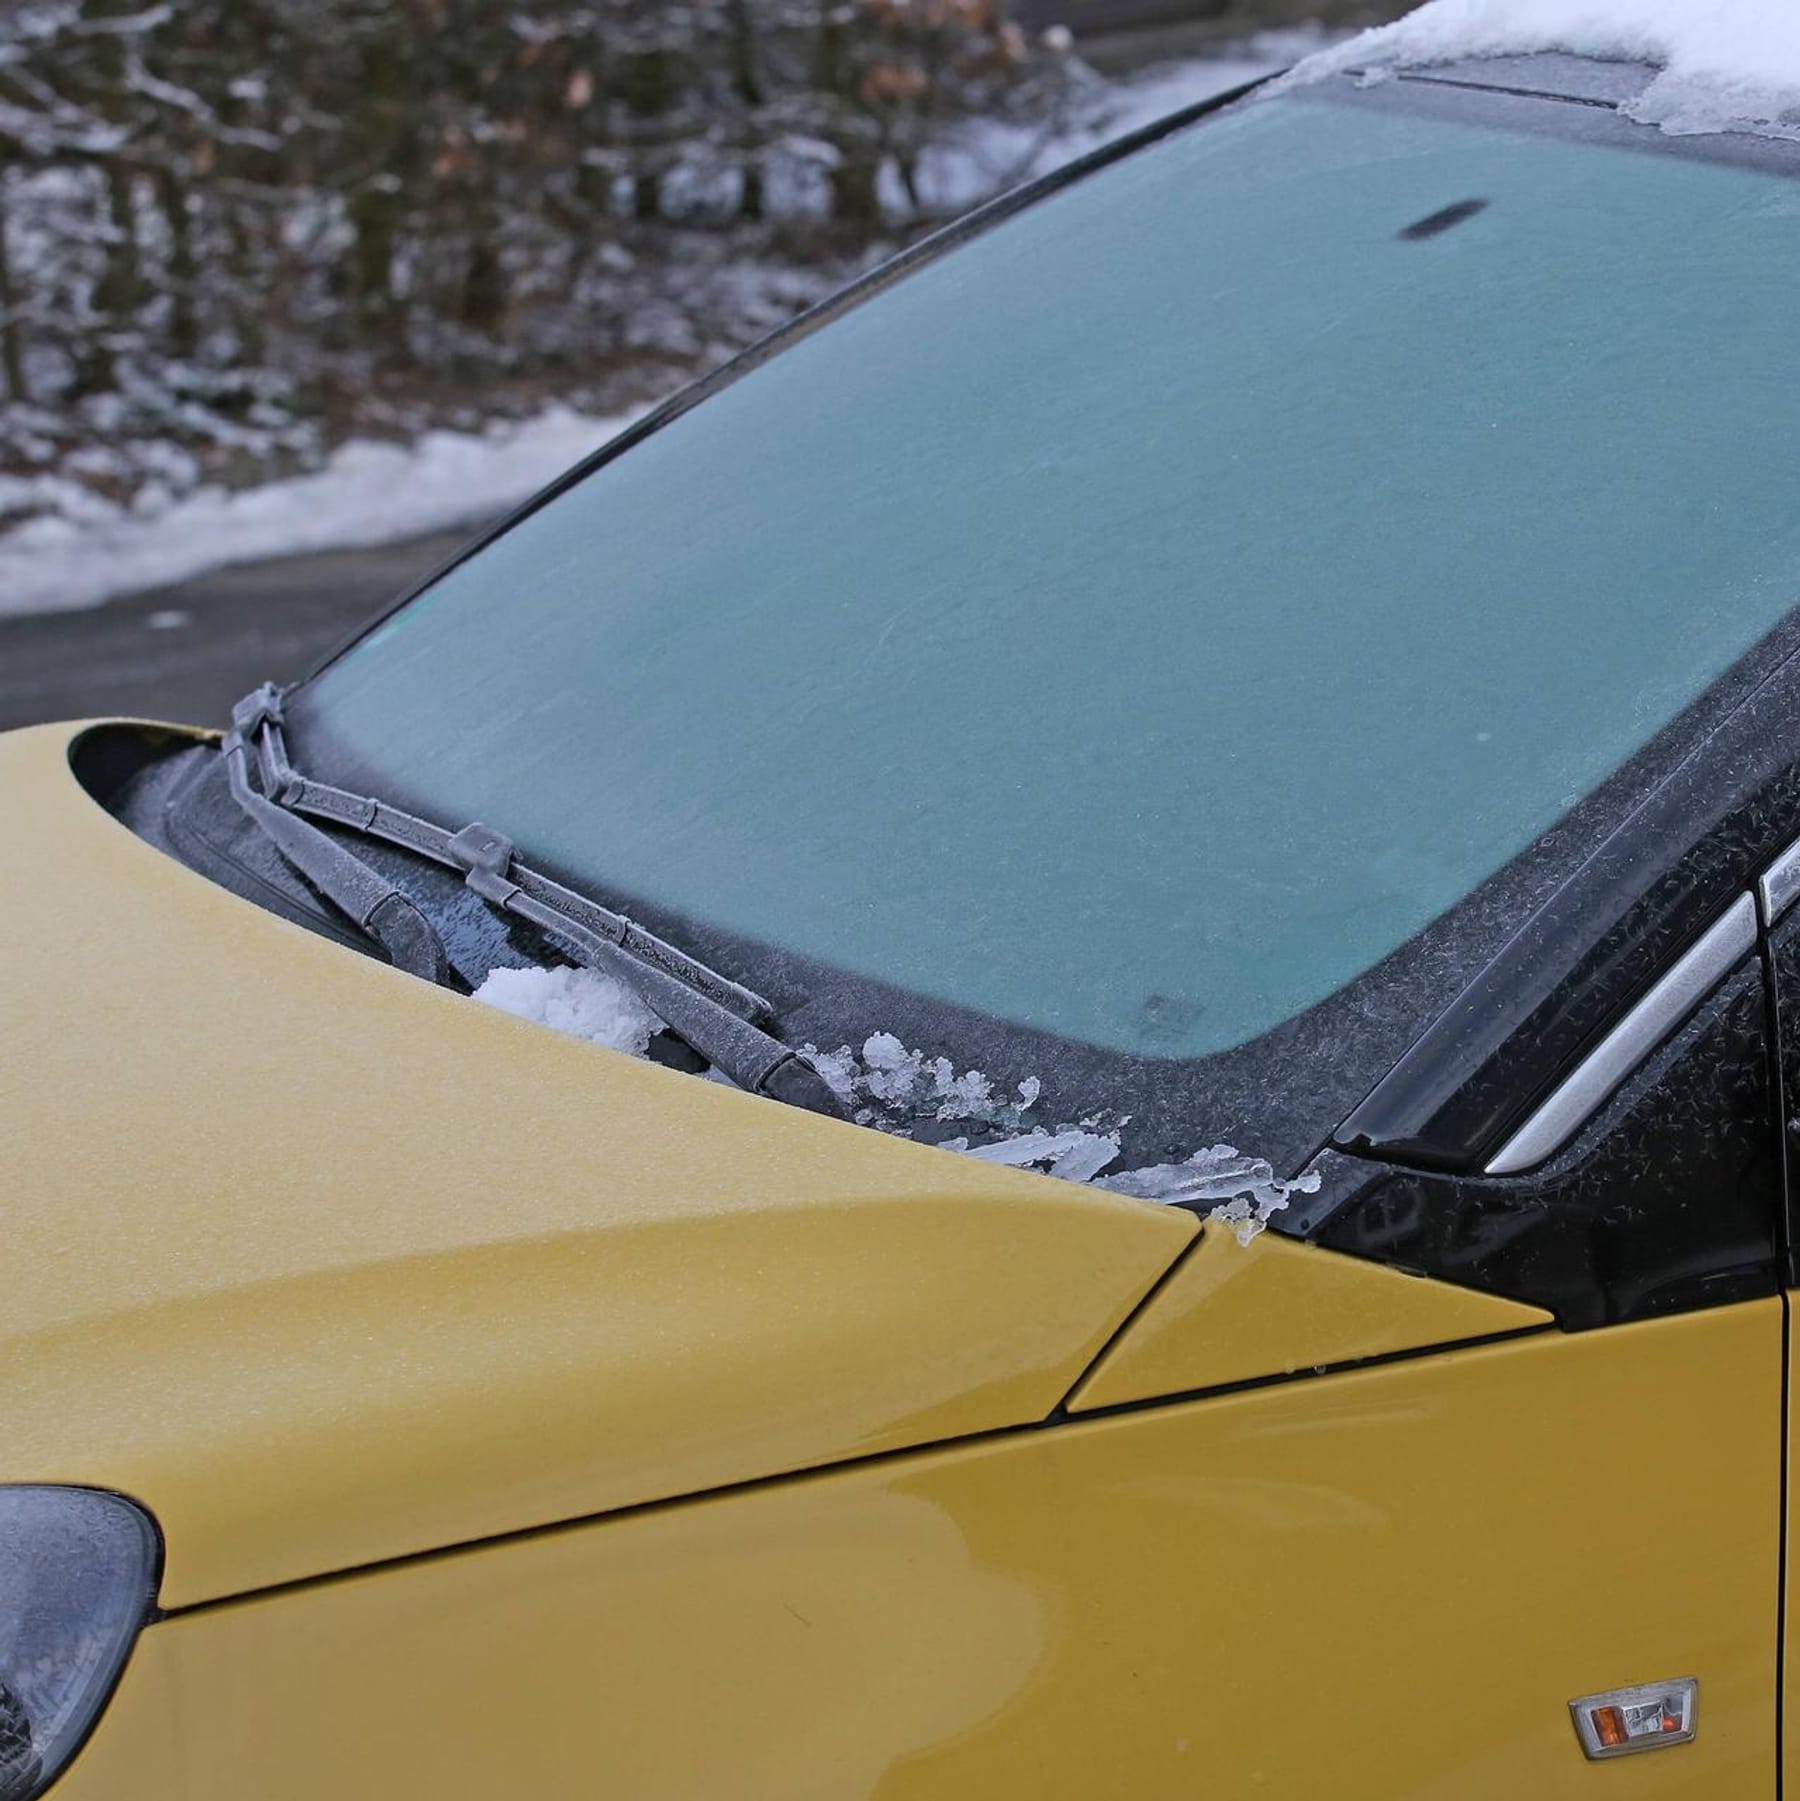 Frostschutz im Test: Nur zwei Auto-Scheibenreiniger sorgen für Durchblick!, Leben & Wissen